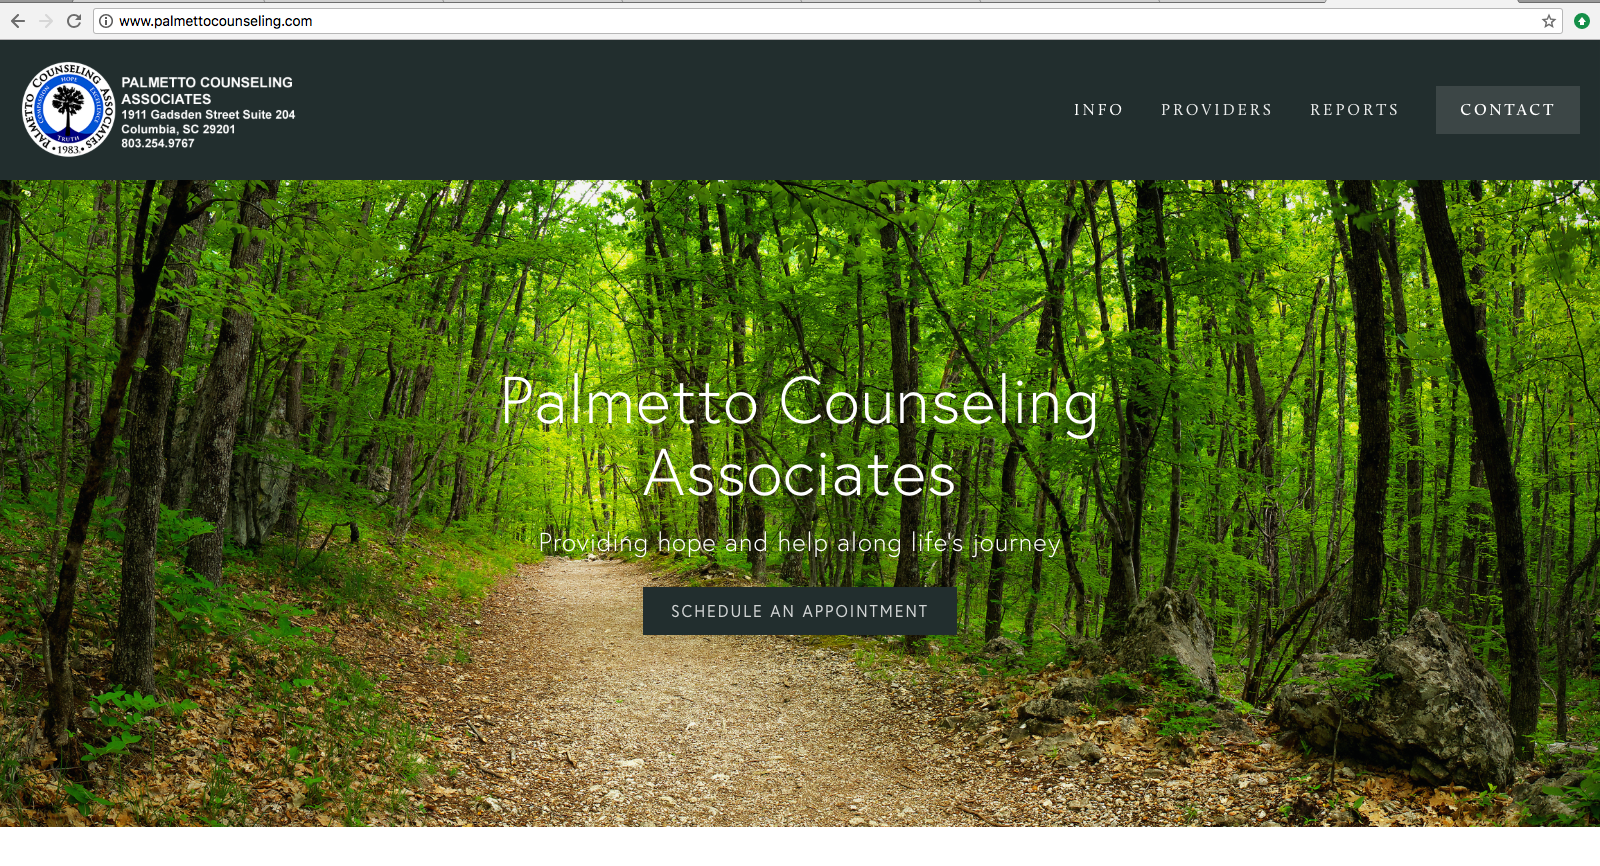 Palmetto Counseling Associates